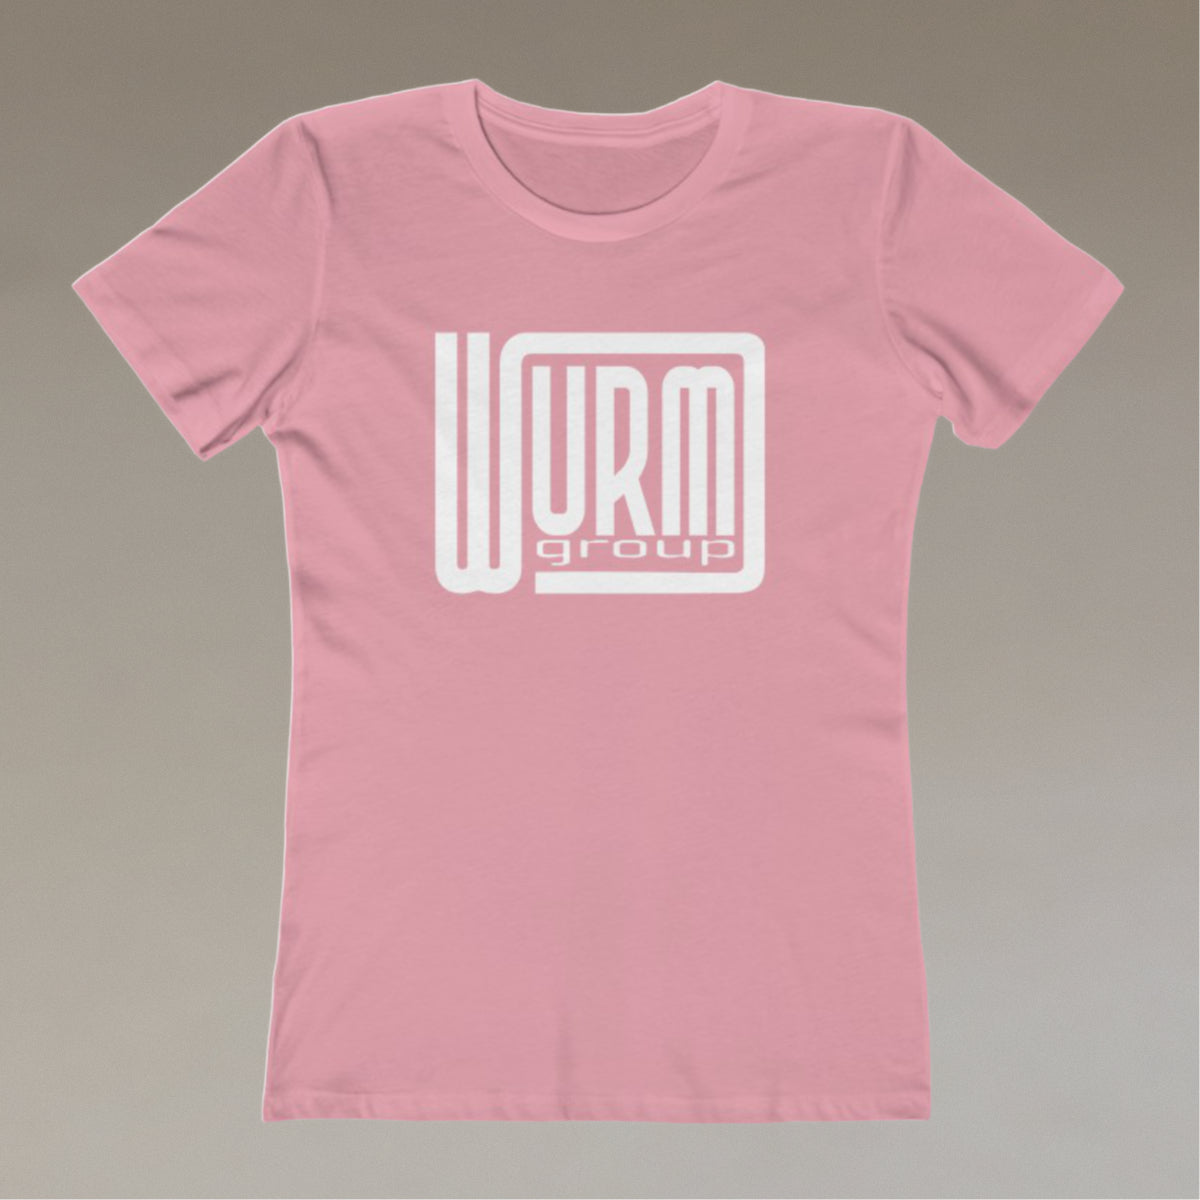 WURMgroup - Logo - Women's T-Shirt